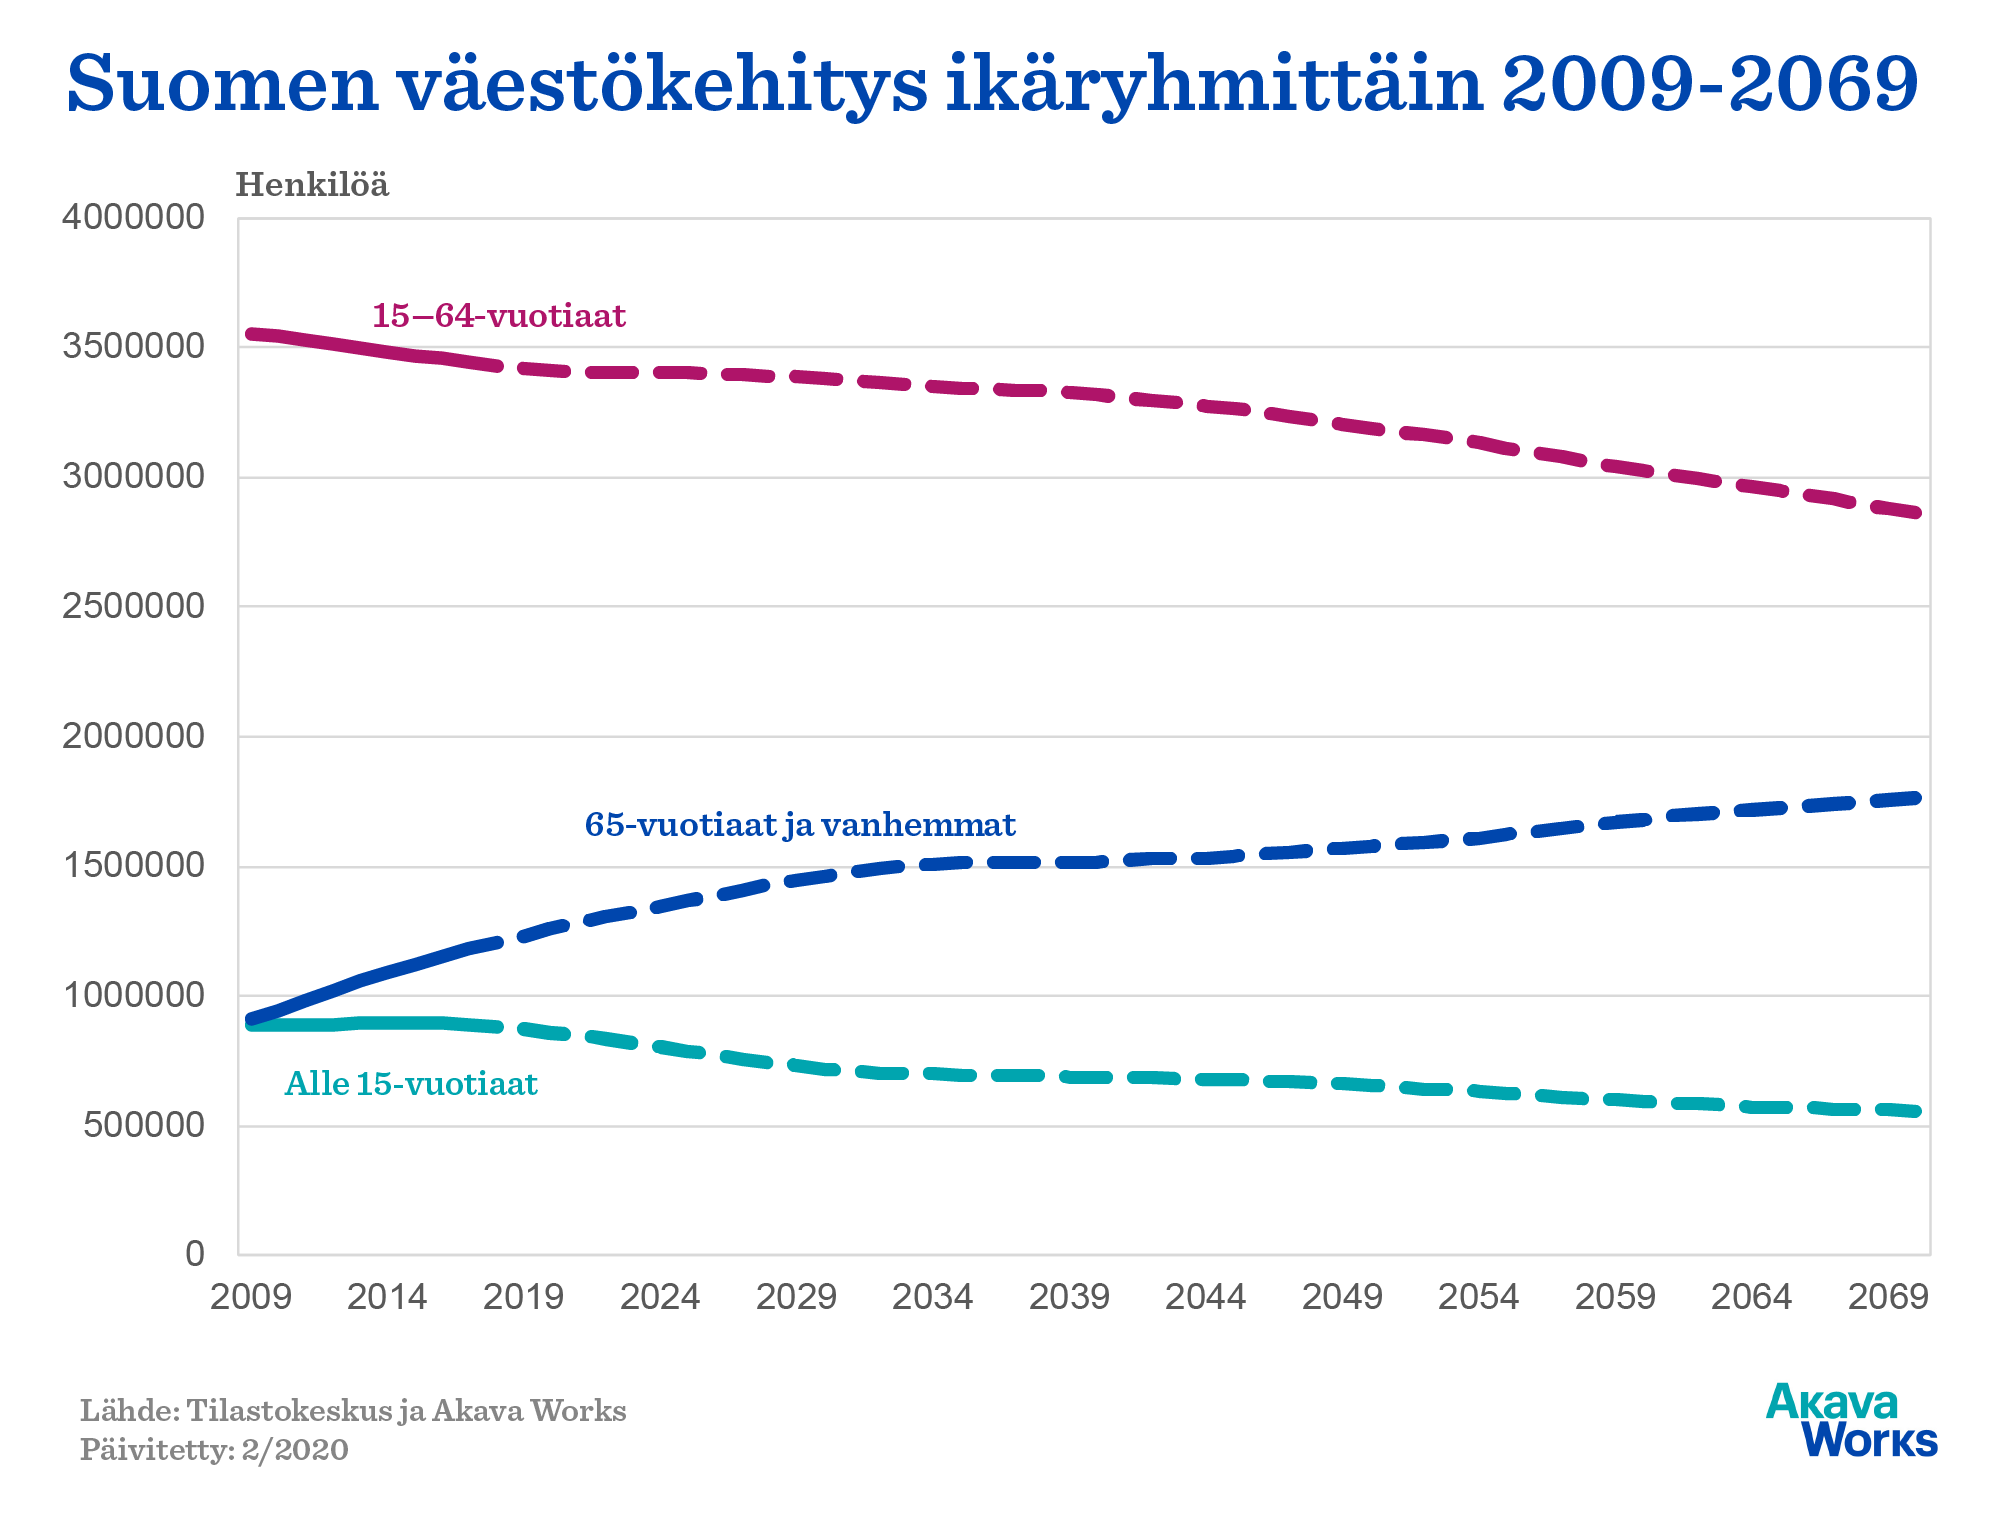 Suomen väestön kehitys ikäryhmittäin 2009-2069. Lähde: Akava Works ja Tilastokeskus. Päivitetty: 2/2020.